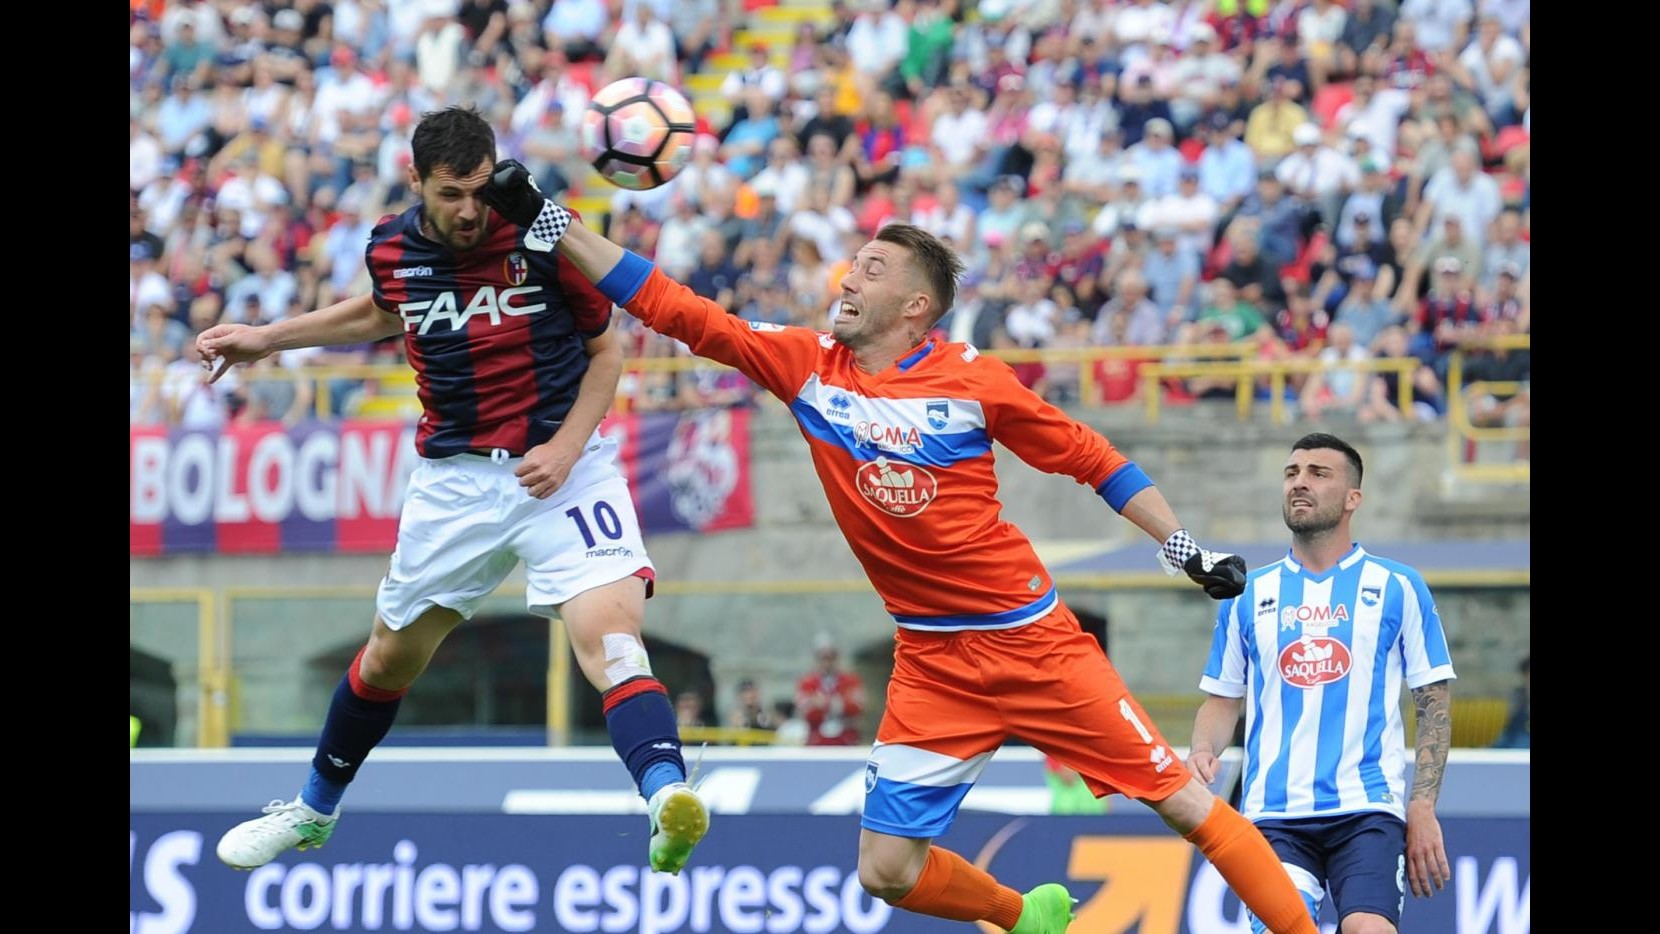 FOTO Serie A, Bologna stende Pescara 3-1: doppio Destro